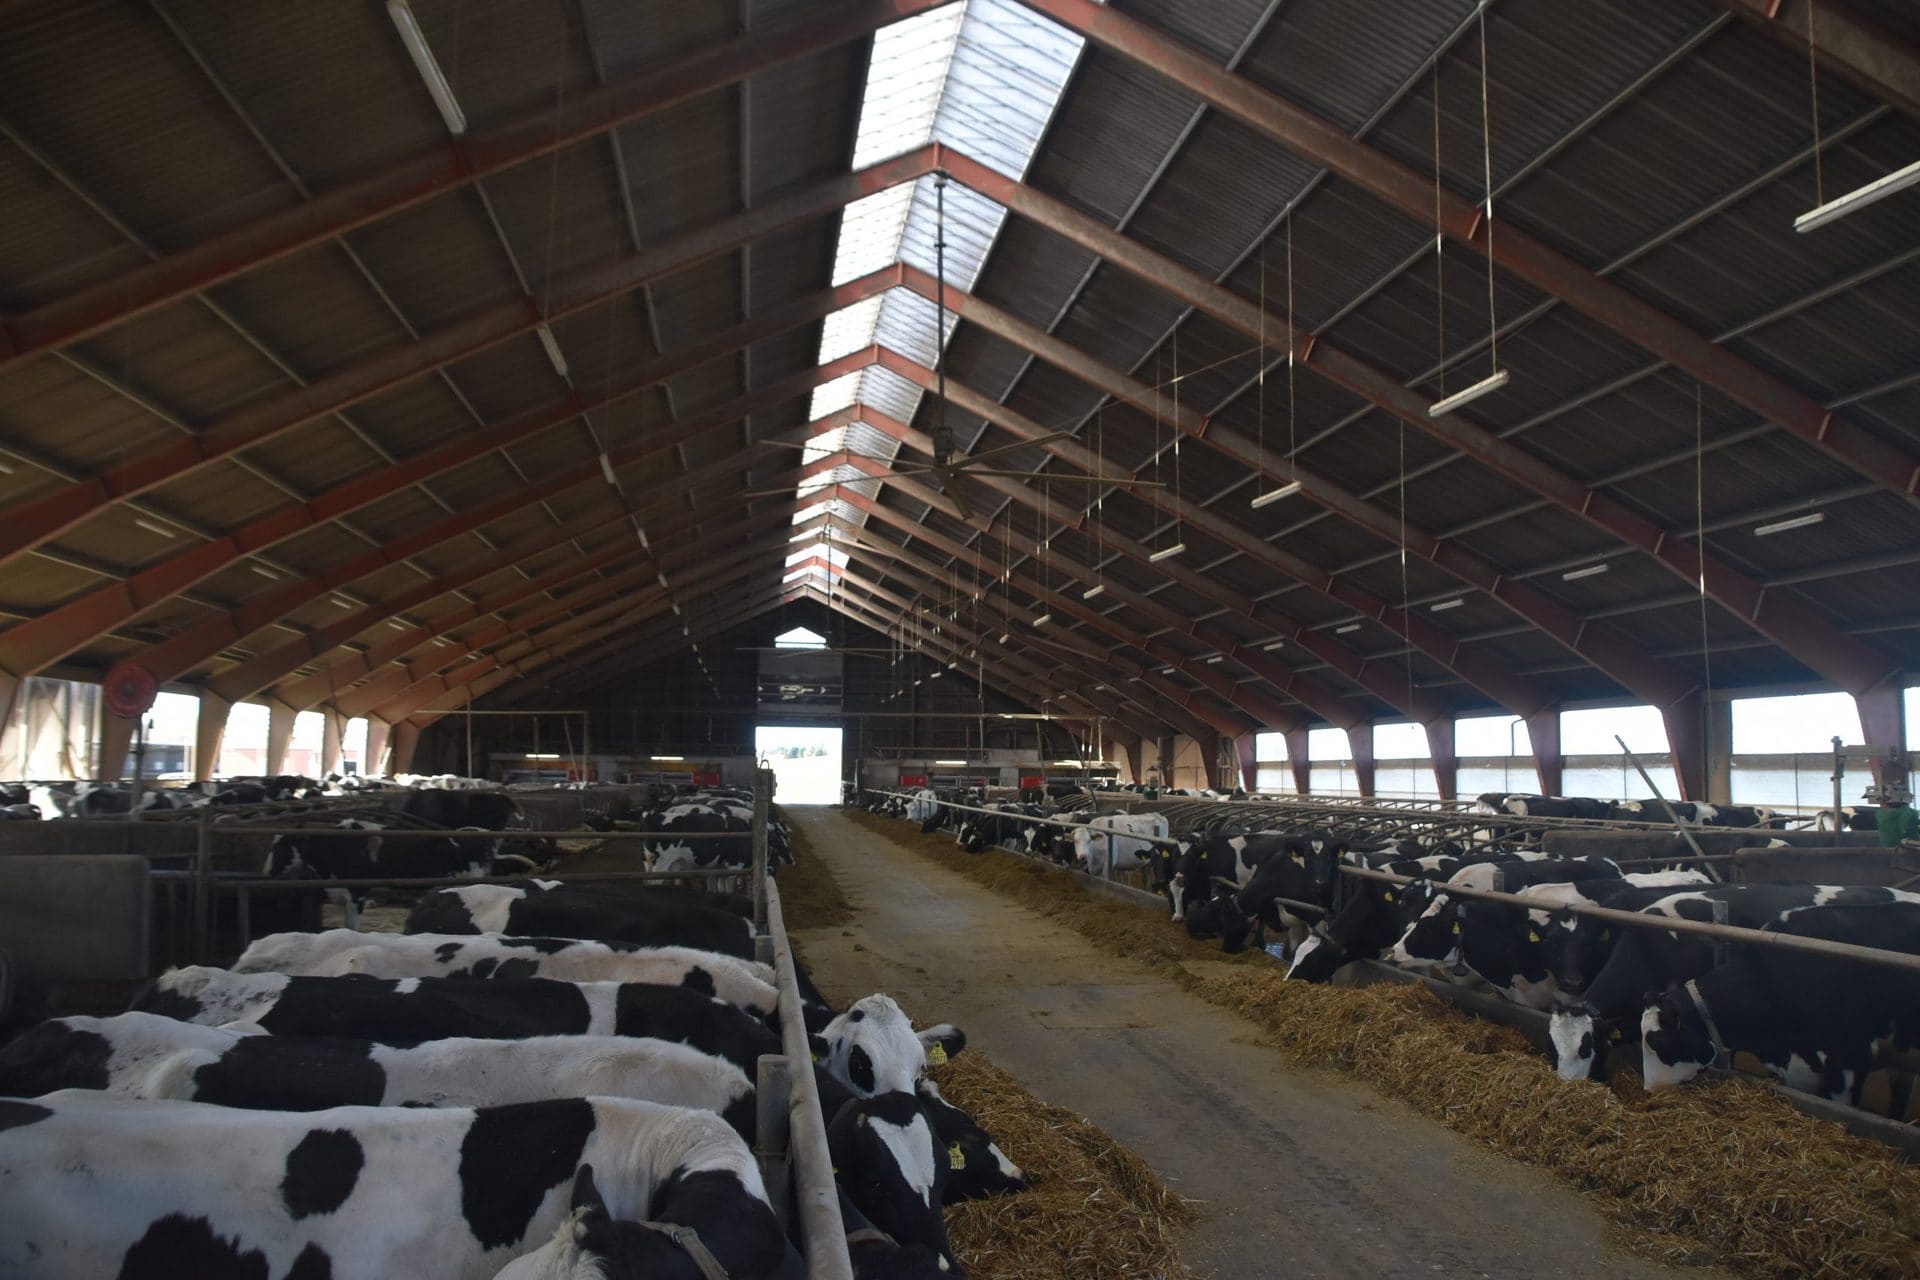 Fruerlundgaard - Farm management - Cow signals (7)